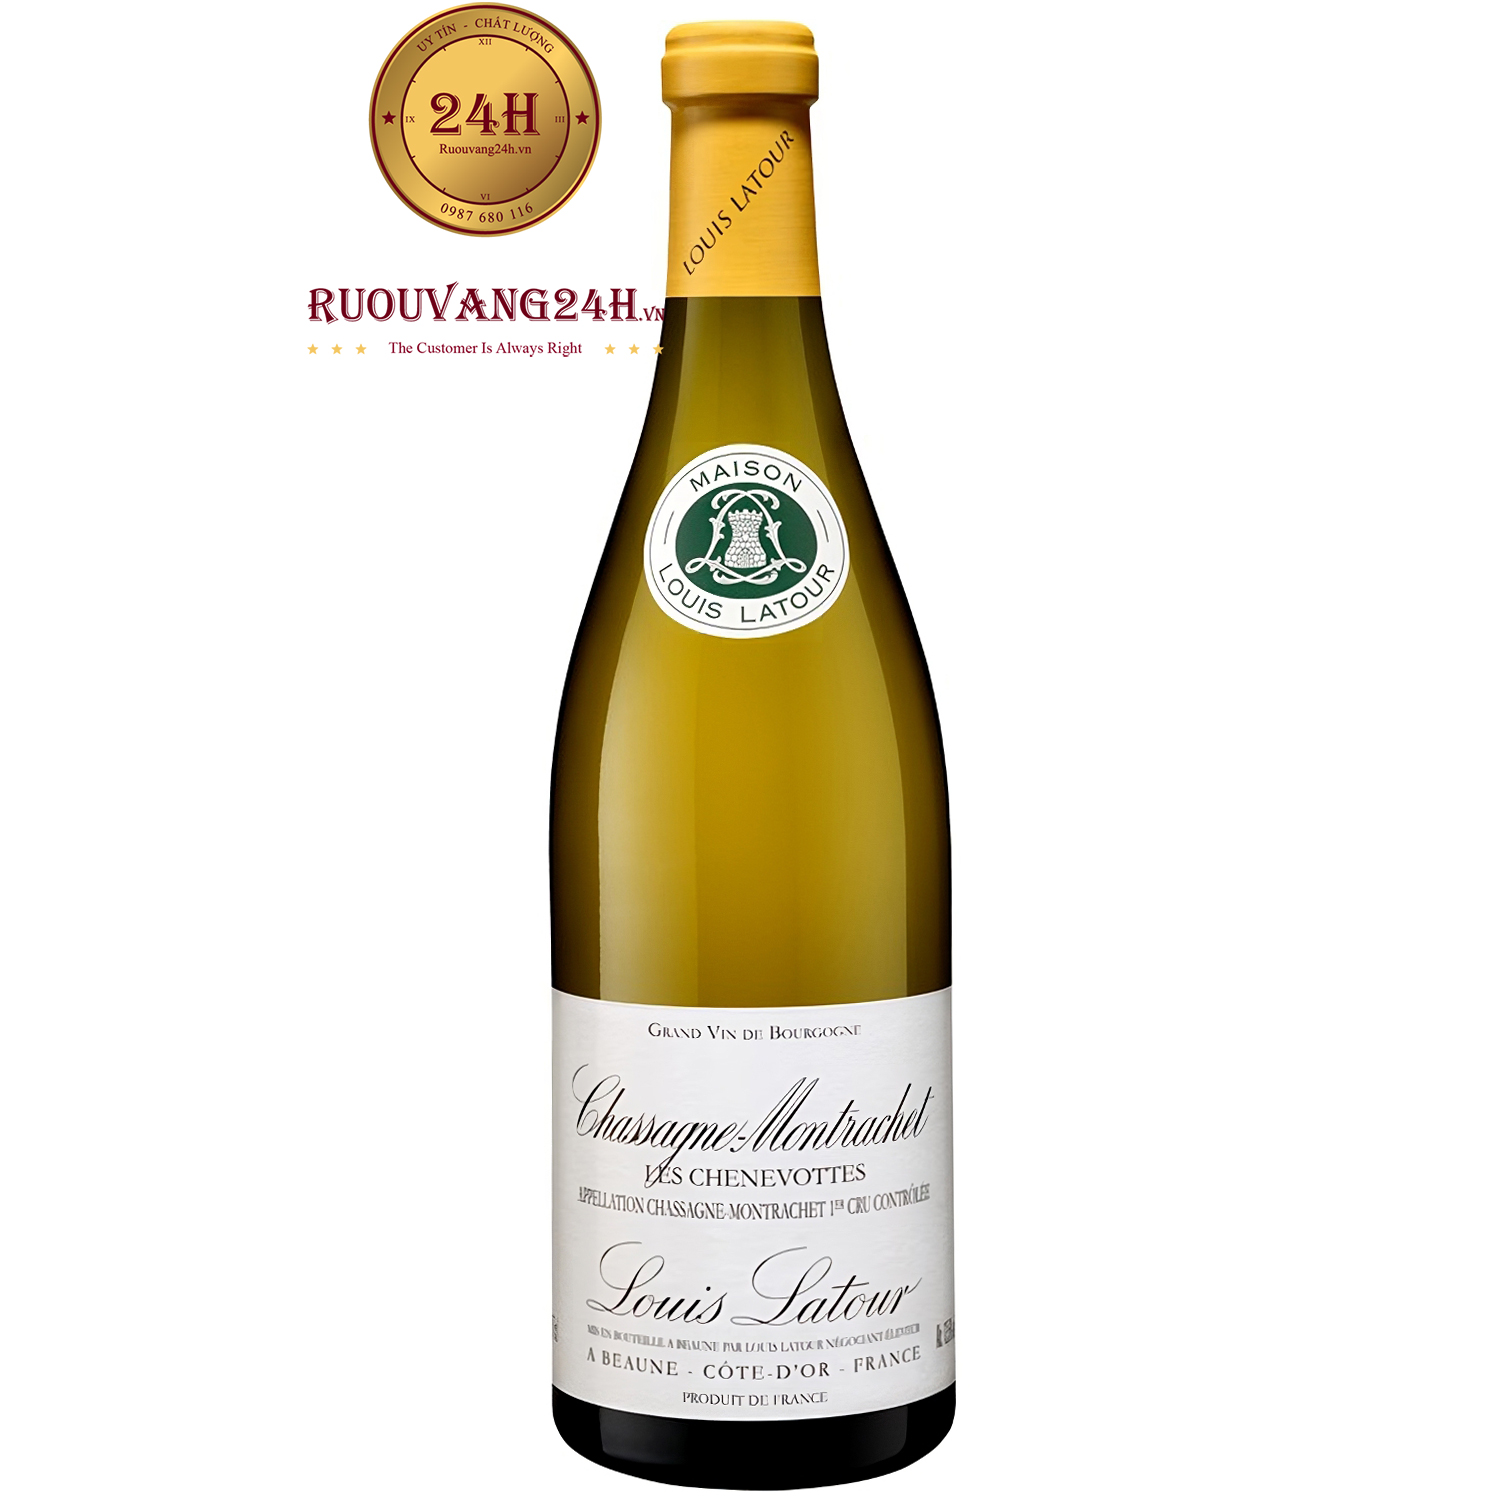 Rượu Vang Louis Latour Chassagne Montrachet Les Chenevottes